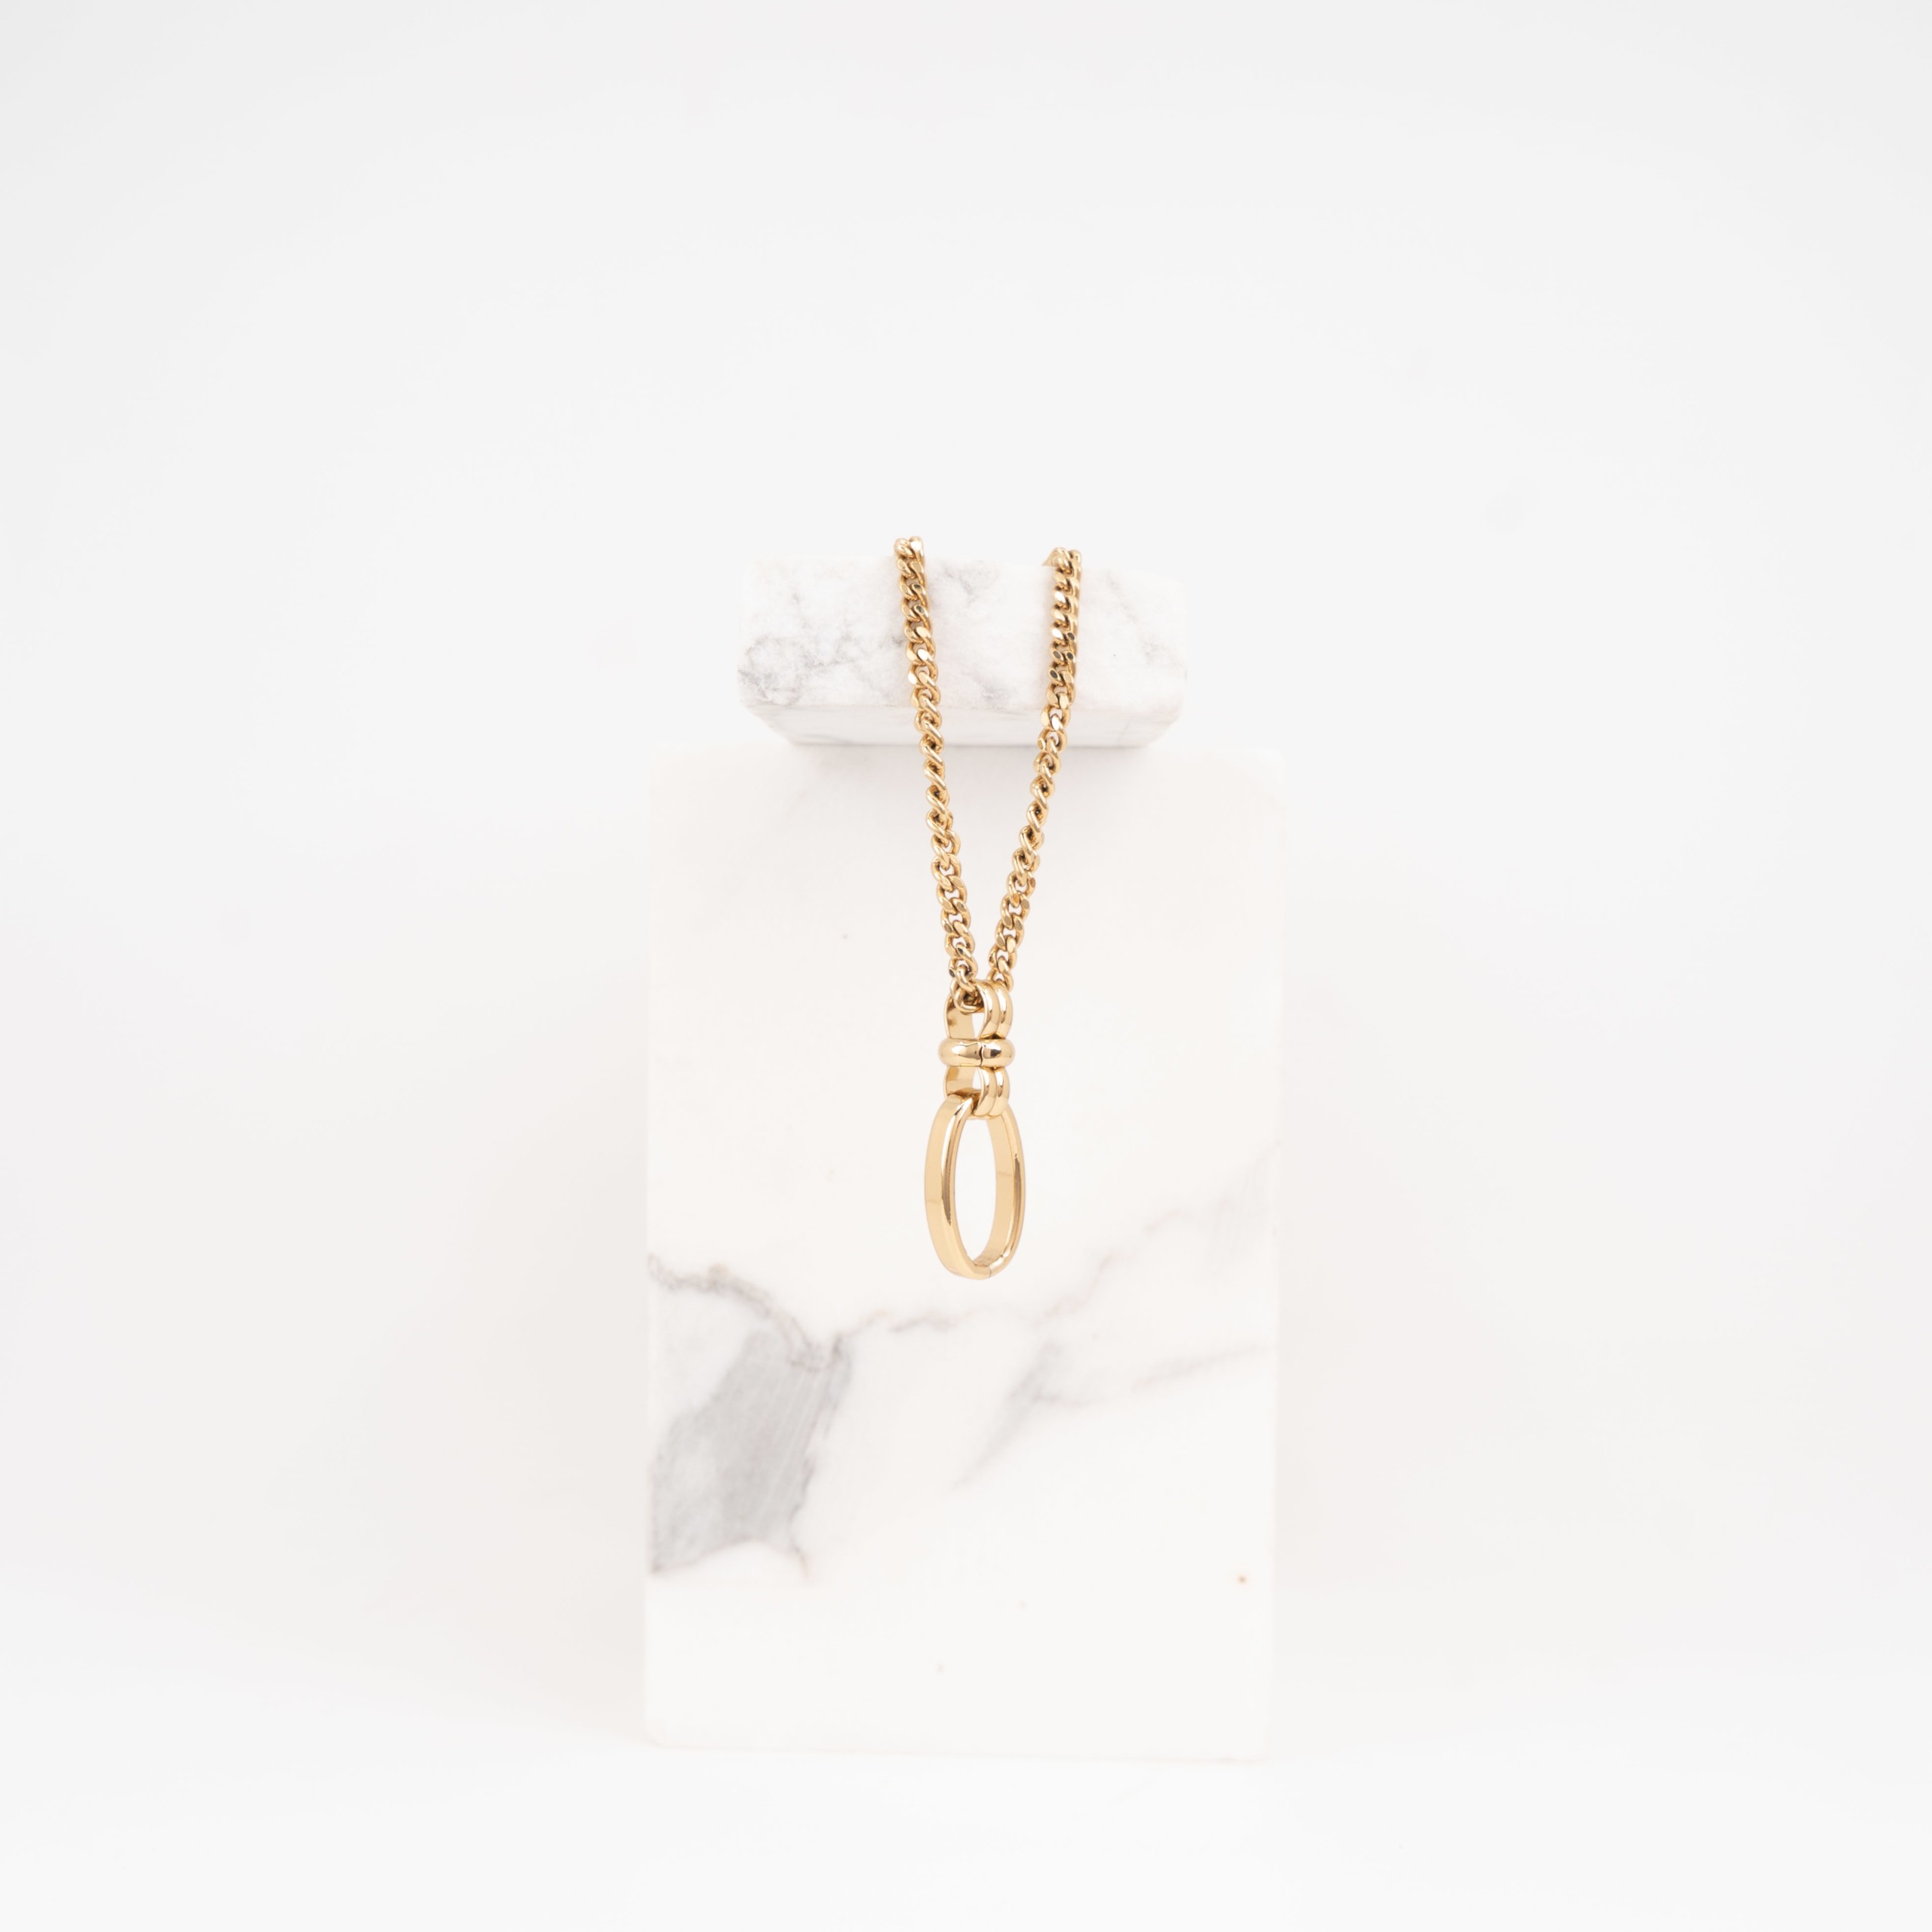 Sienna fine chain gold necklace